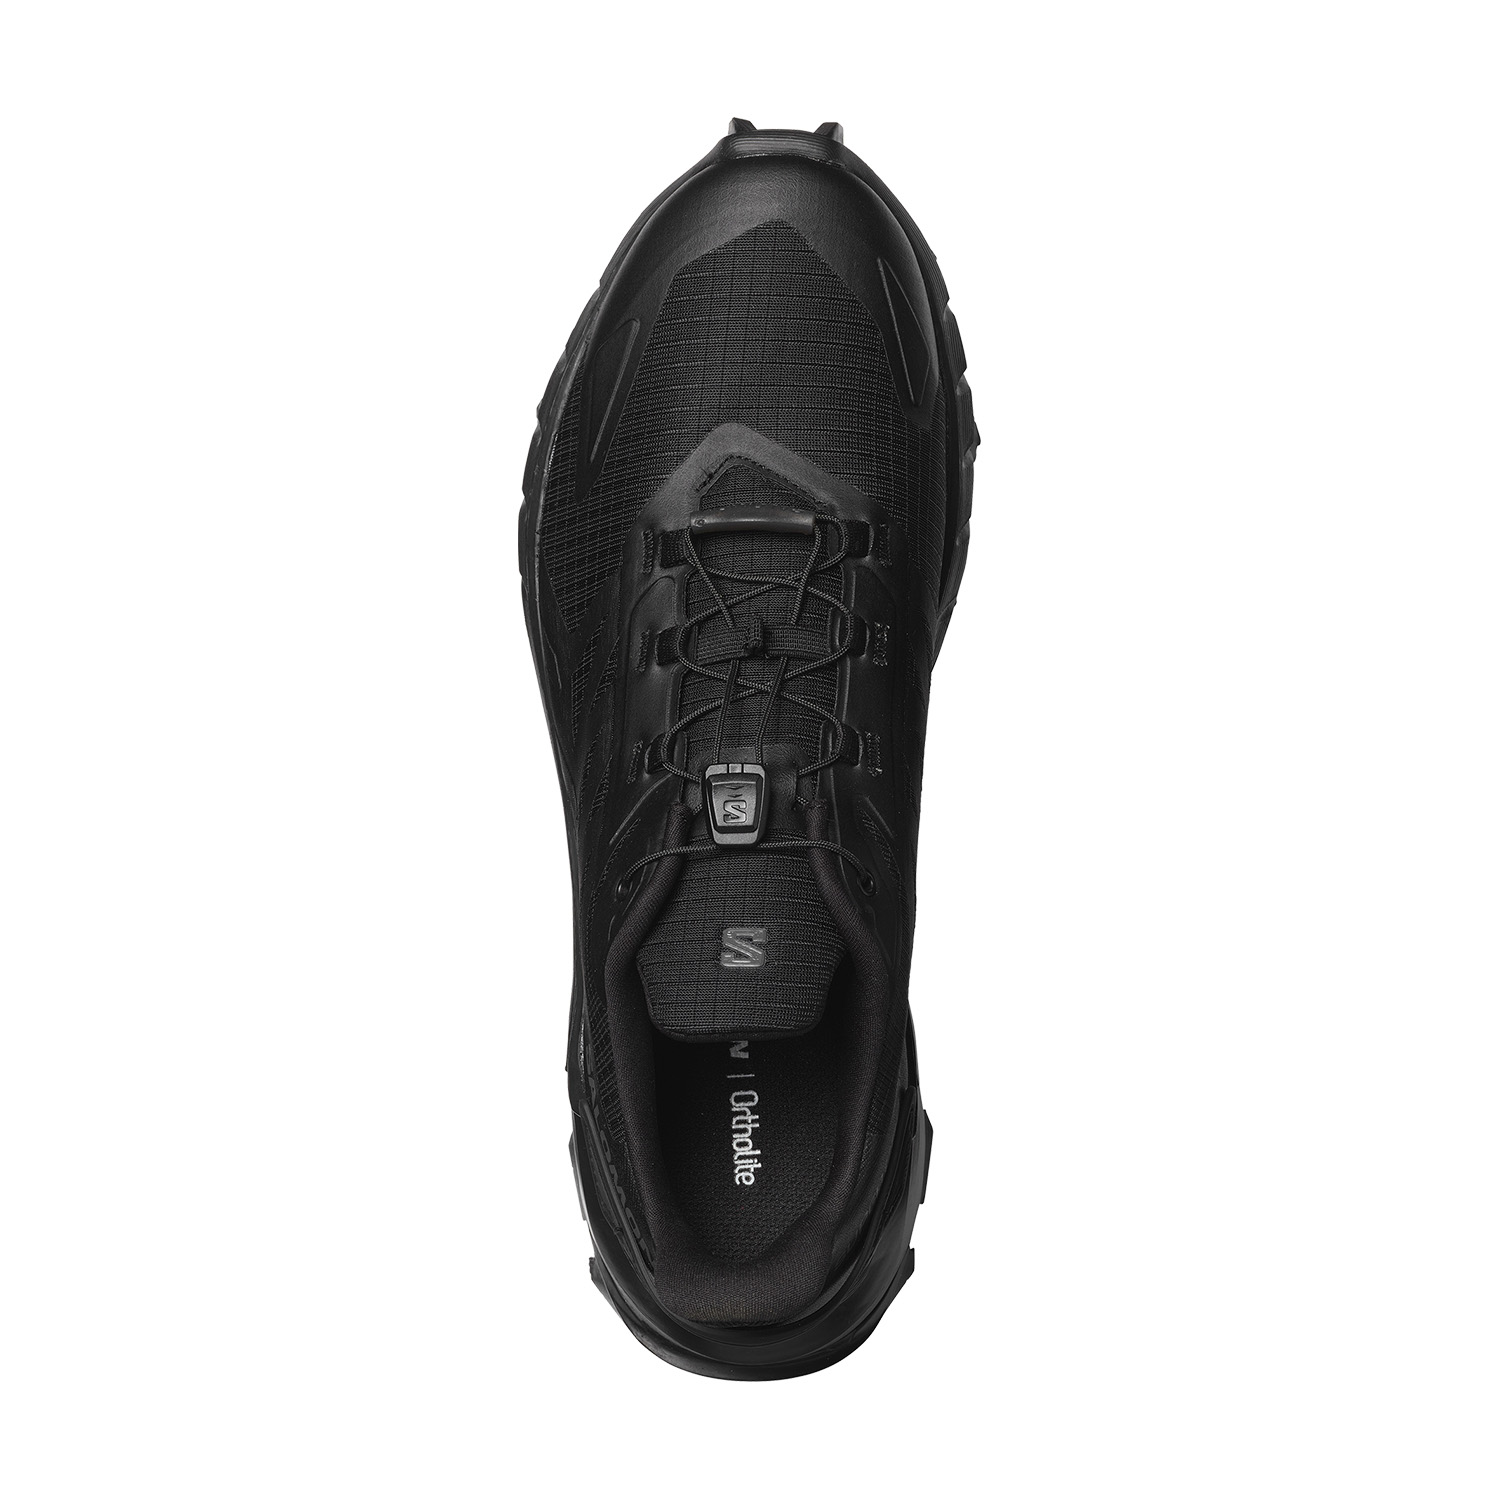 Salomon Supercross 4 Men's Trail Running Shoes - Black